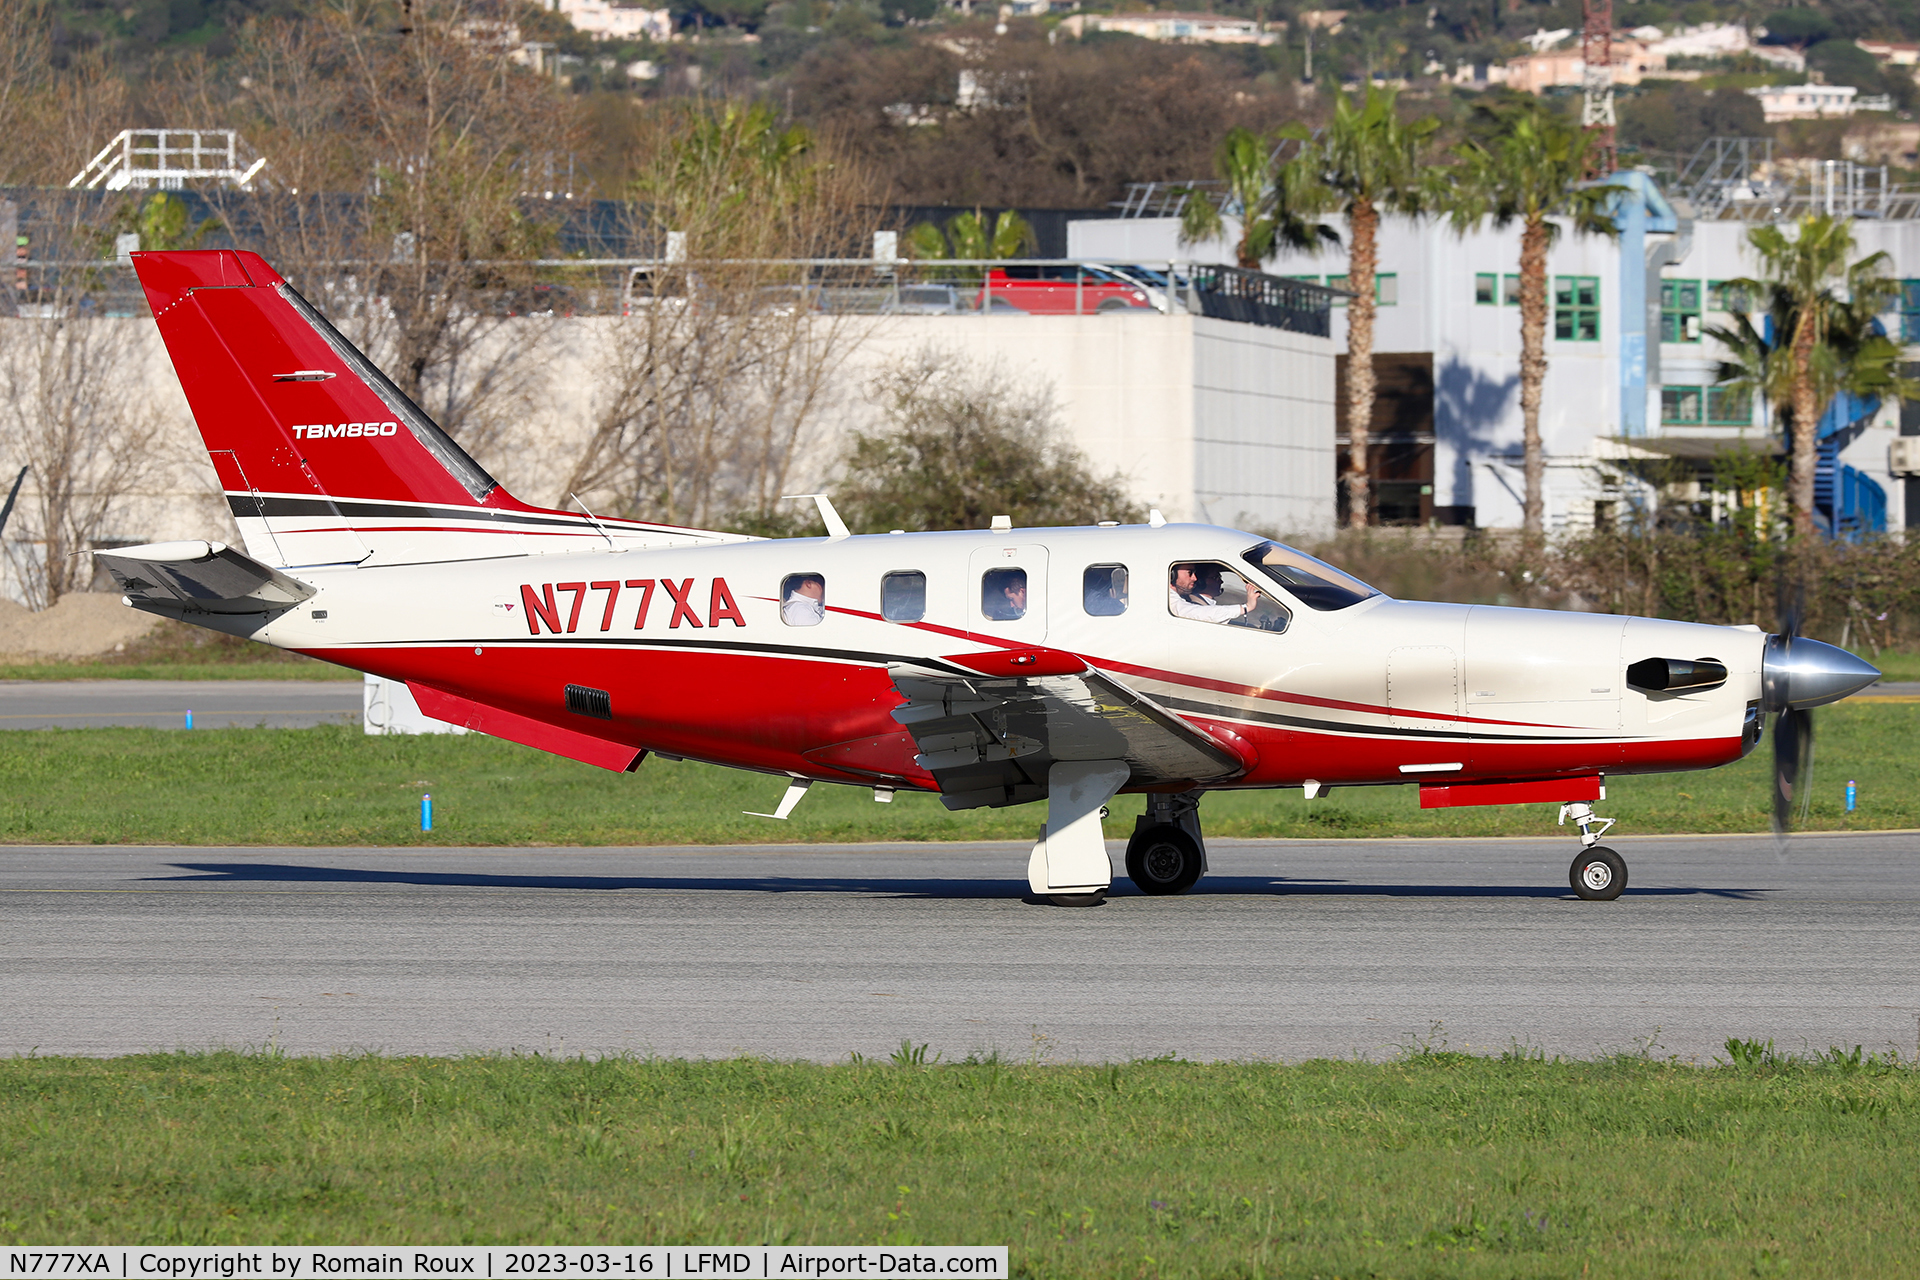 N777XA, 2013 Socata TBM 700 C/N 680, Take off